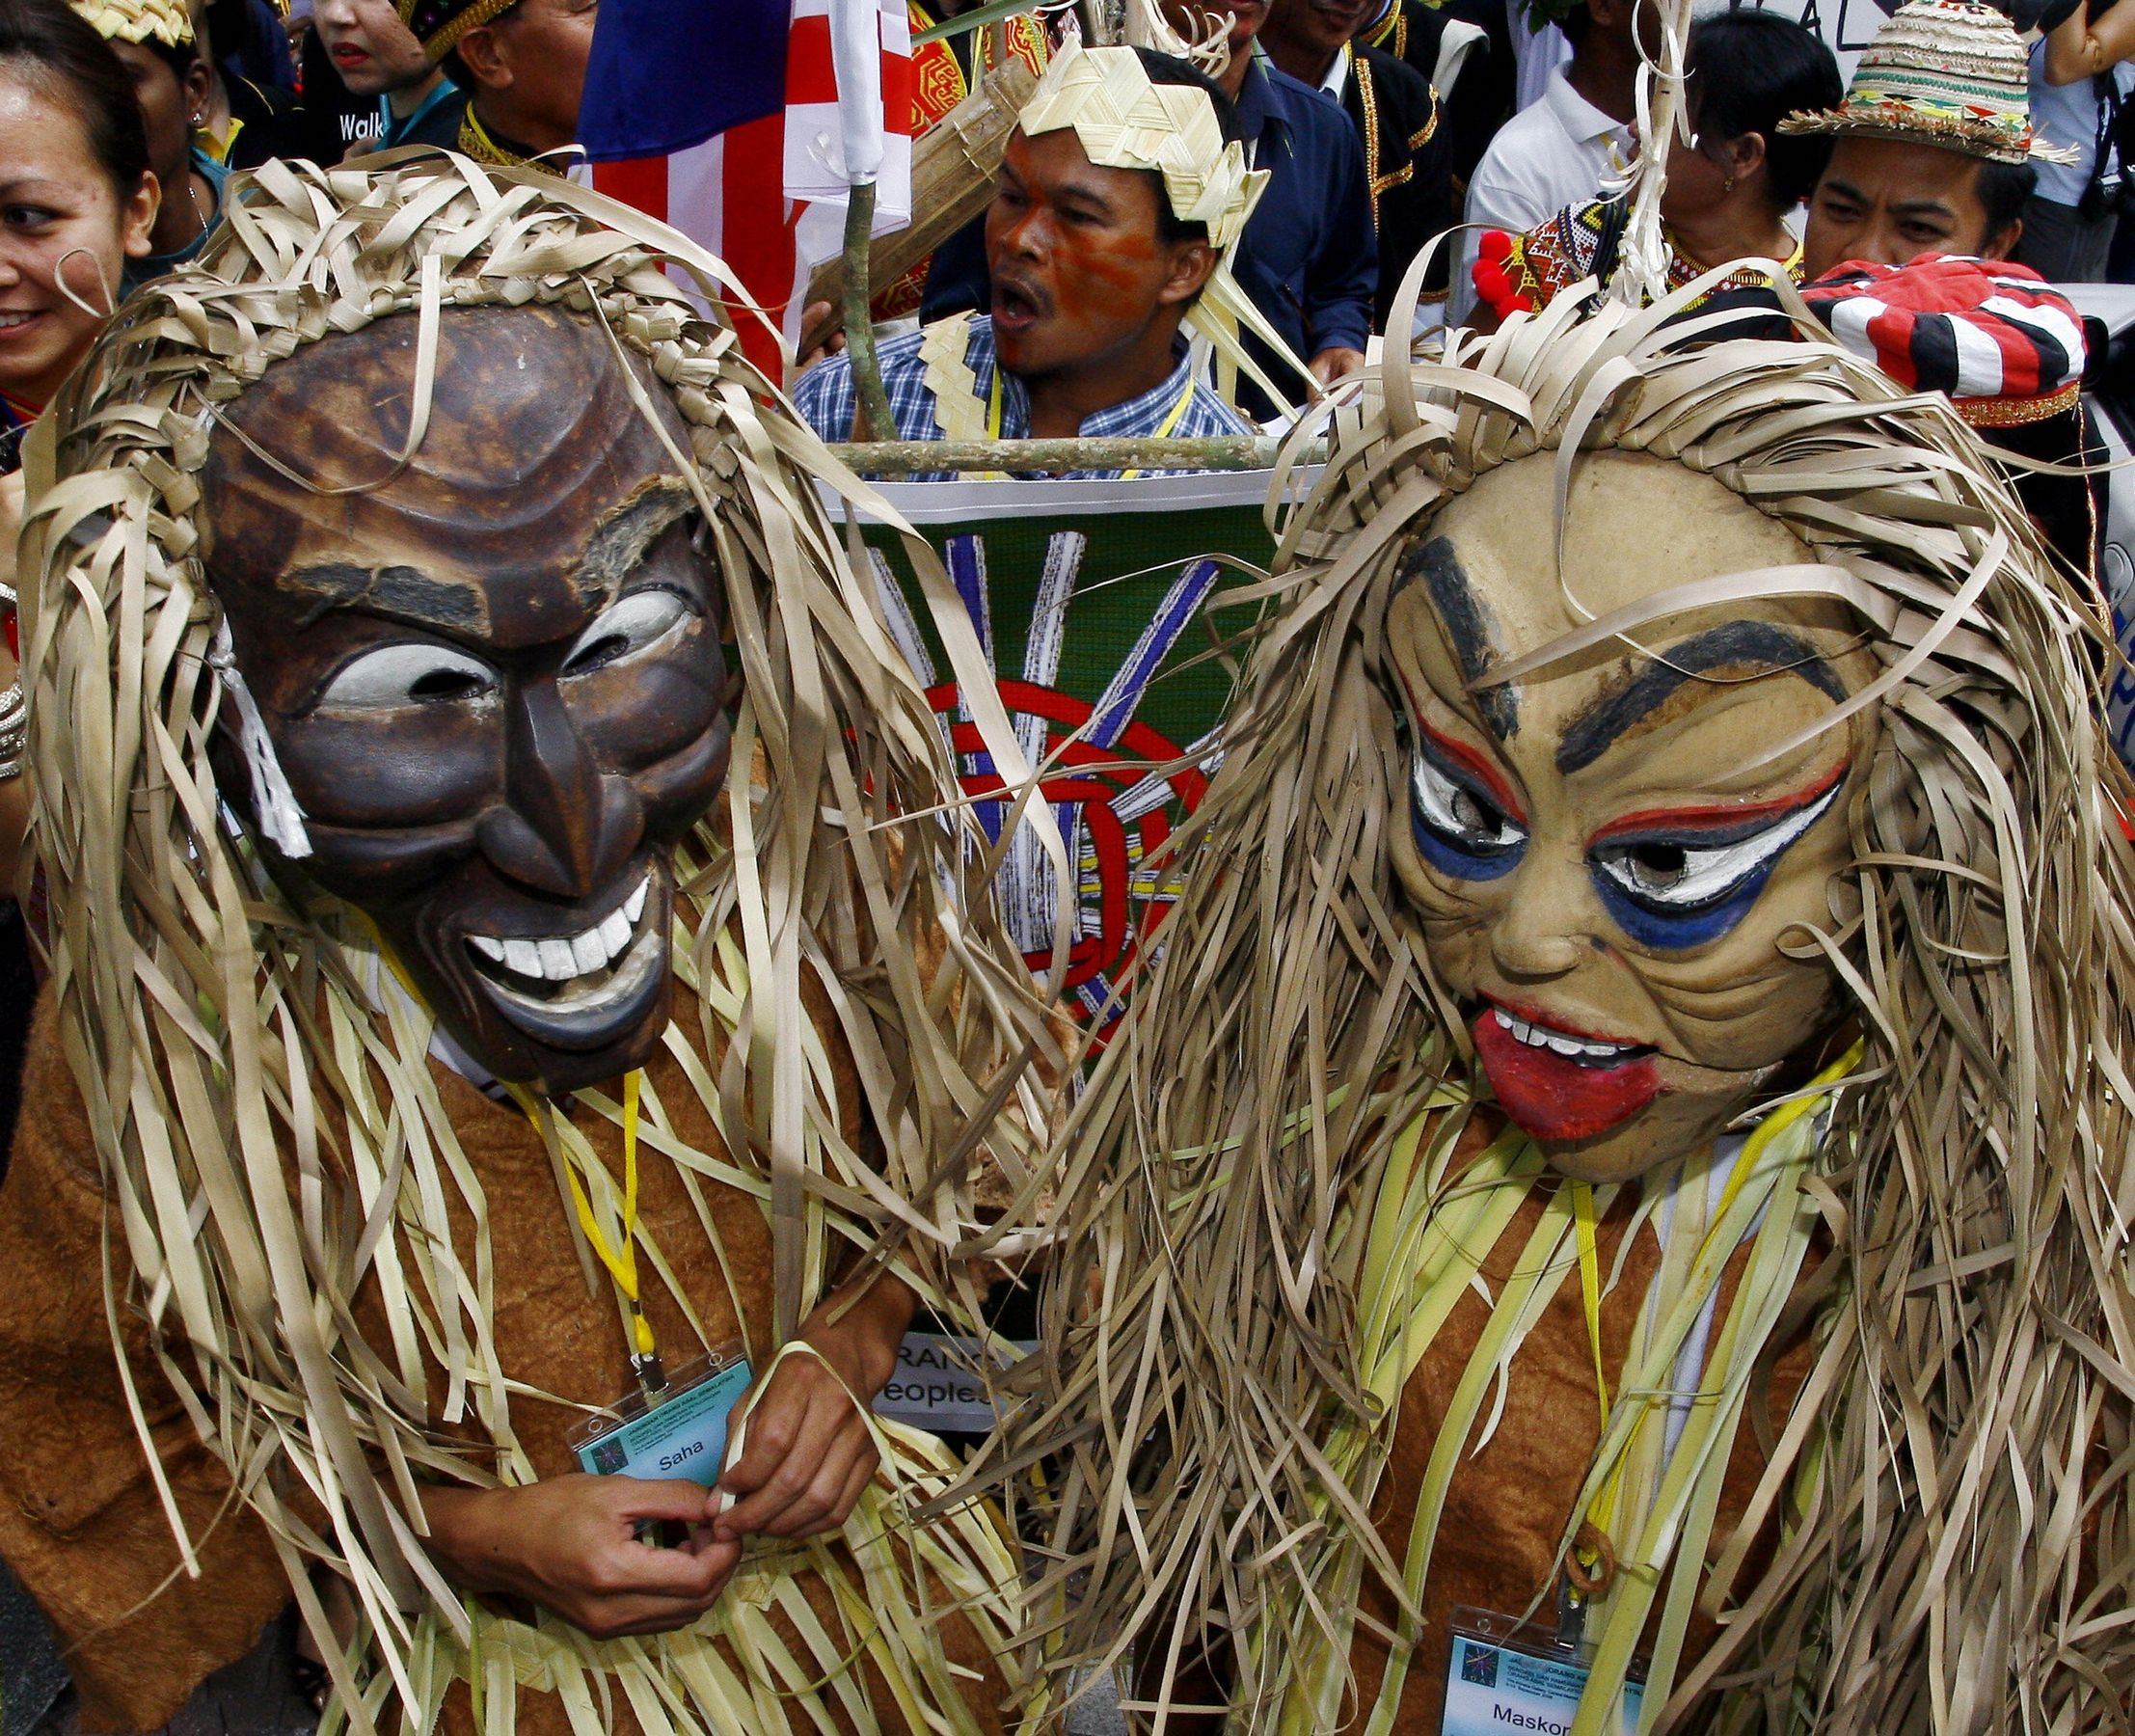 世界上有一些奇特的原始部落，包括「盲族」、「啞巴族」、「無笑肌族」等。圖為馬來西亞兩個戴上面具的土著。